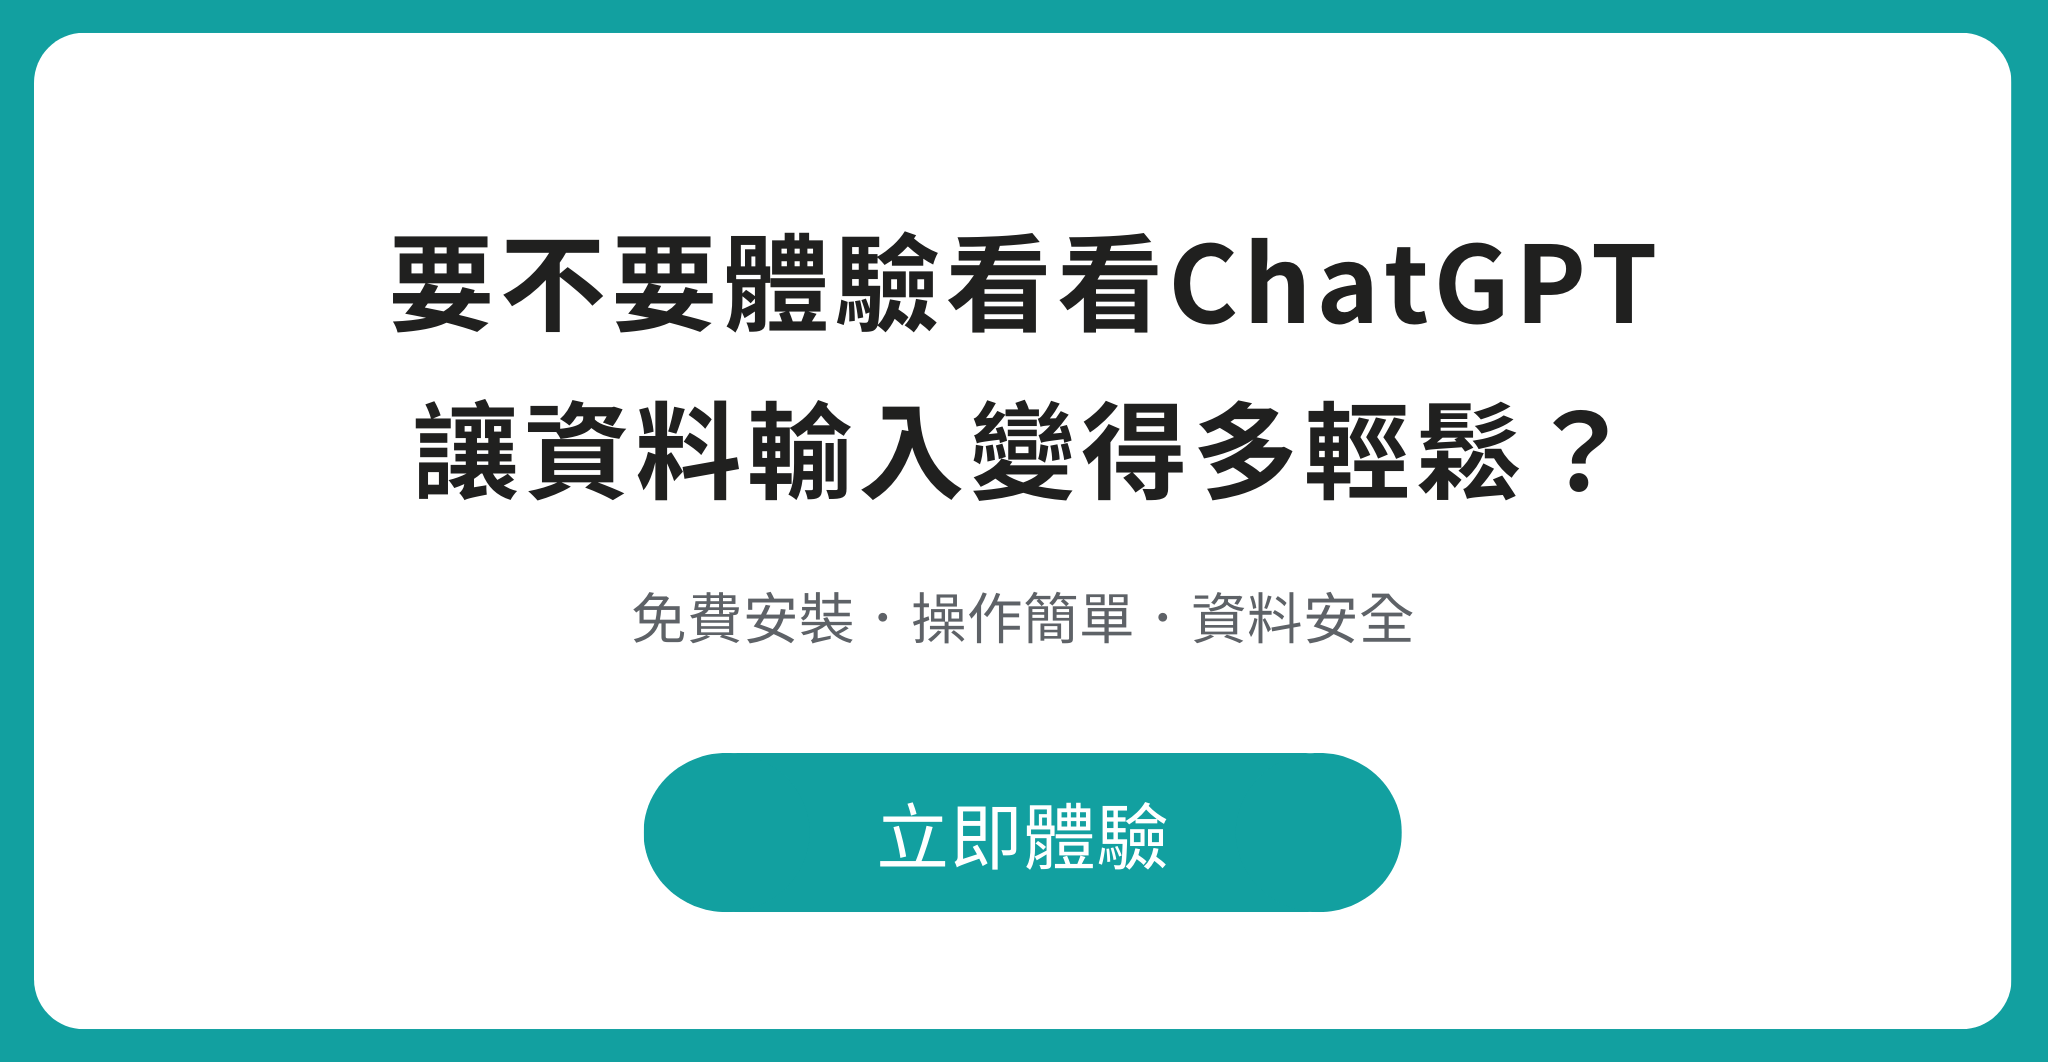 洽詢 ChatGPT 資料輸入小幫手找田中系統